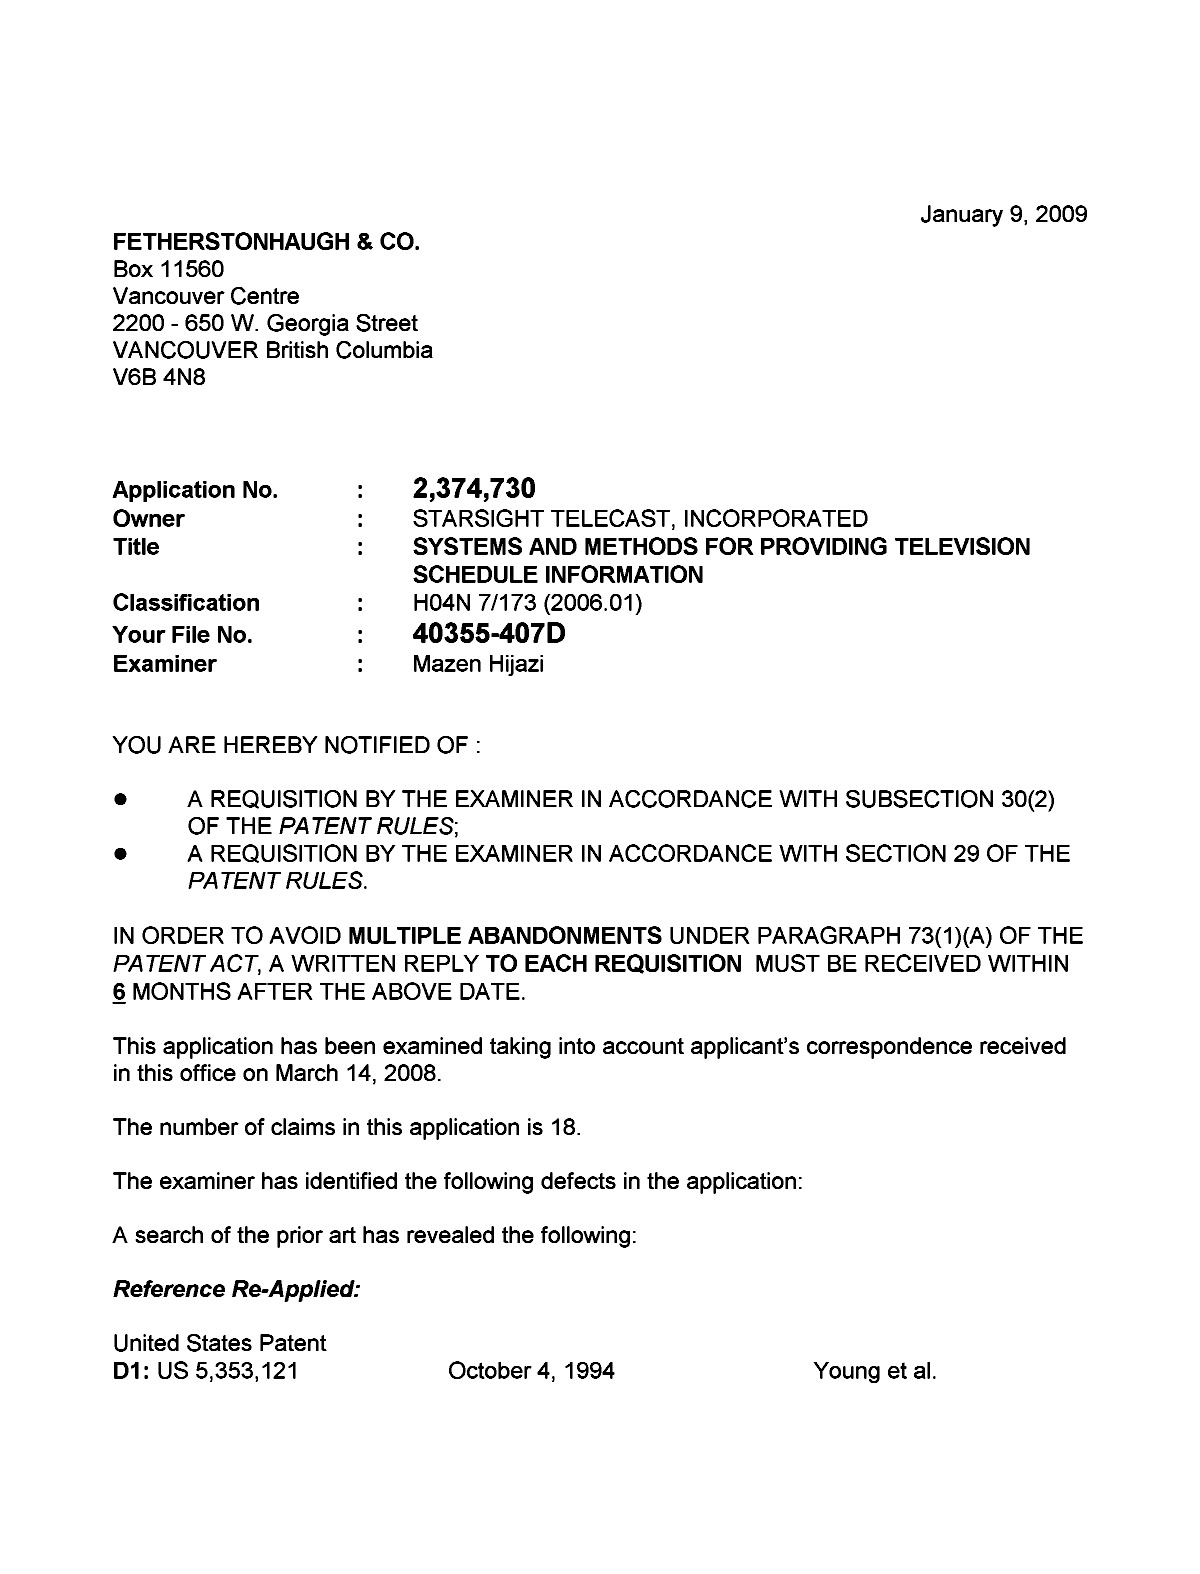 Document de brevet canadien 2374730. Poursuite-Amendment 20081209. Image 1 de 3